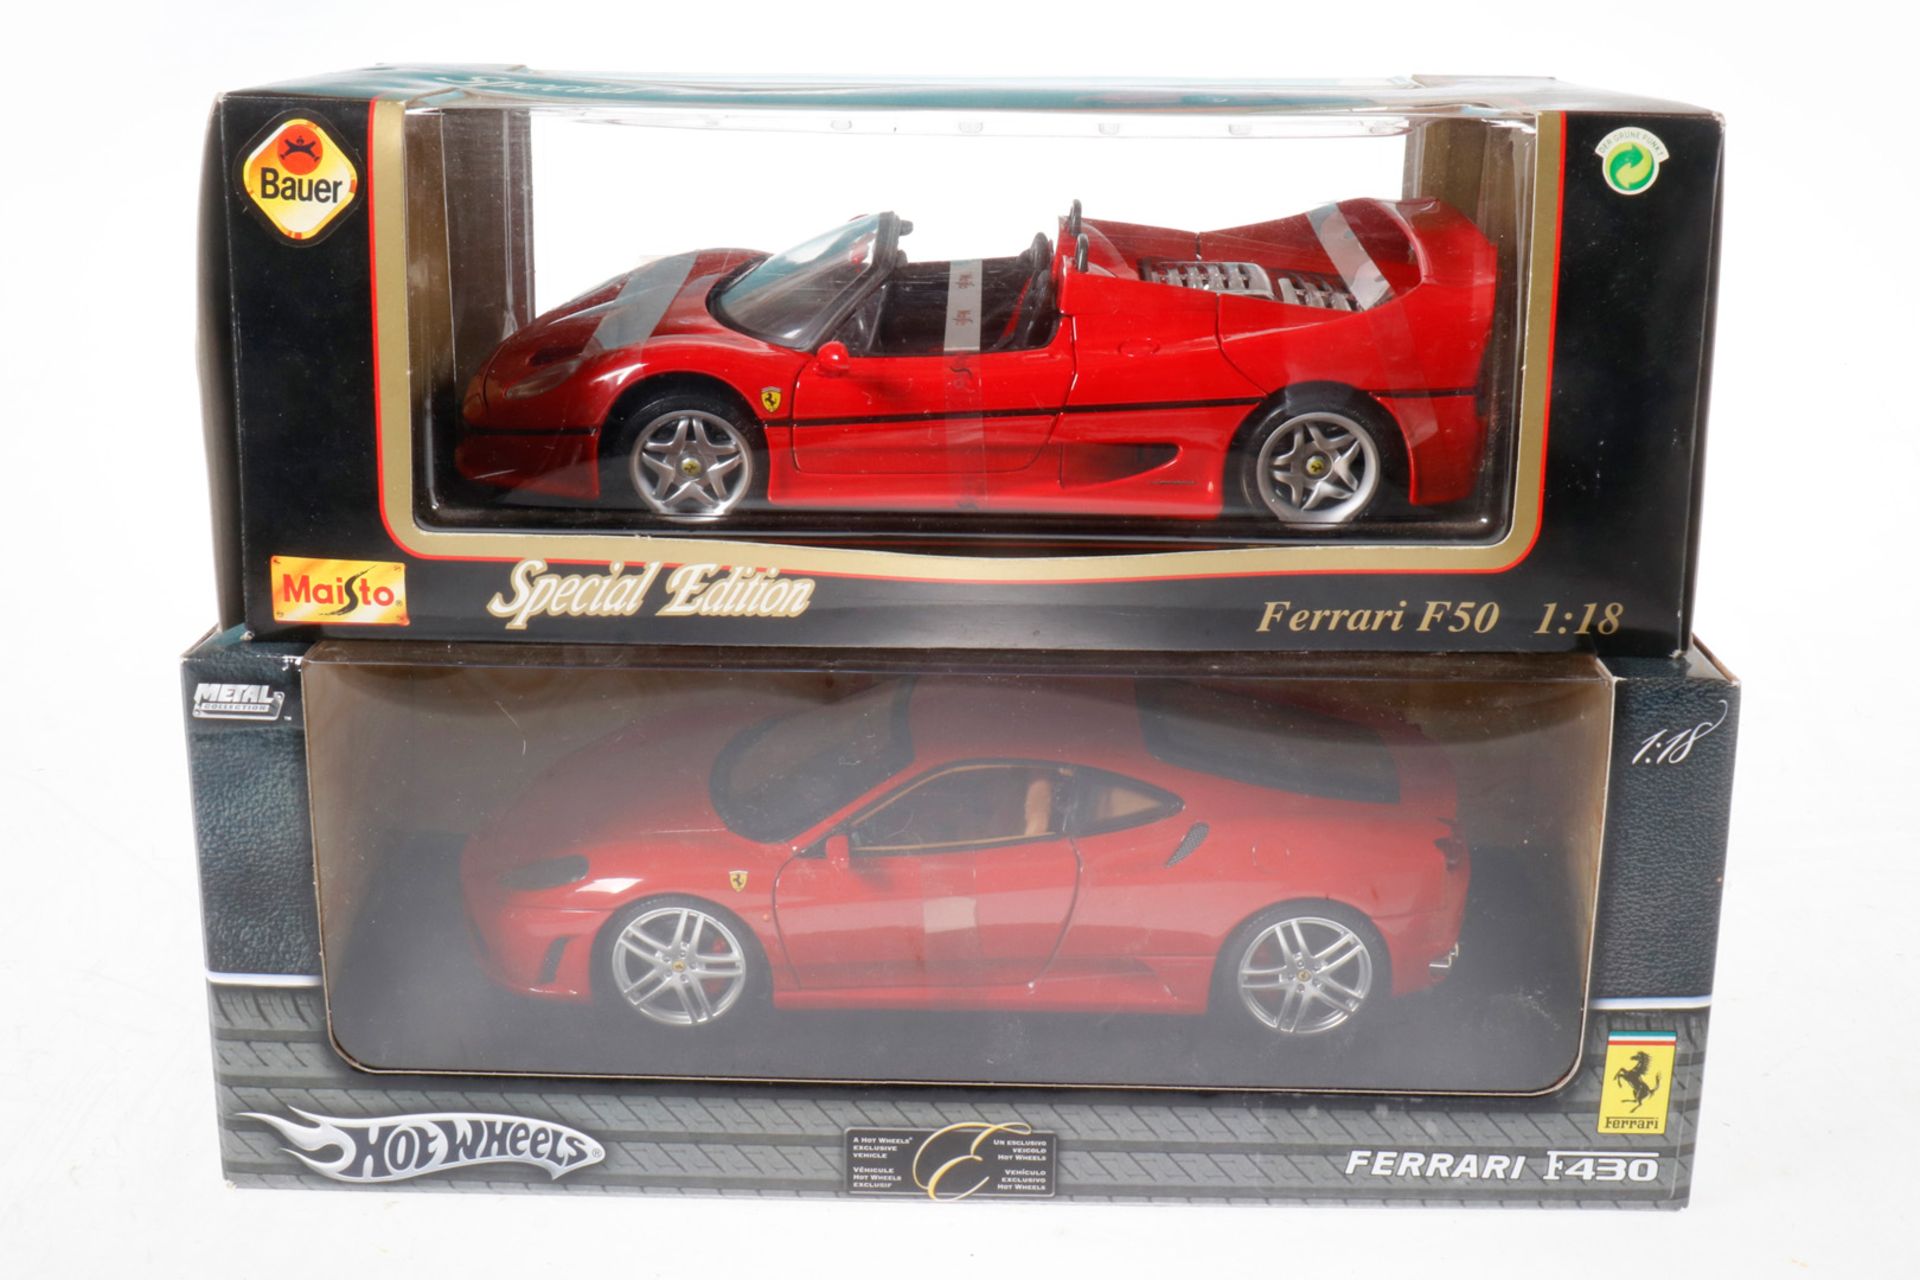 2 Ferrari Modelle, 1/18, Maisto und Hot Wheels, je im OK